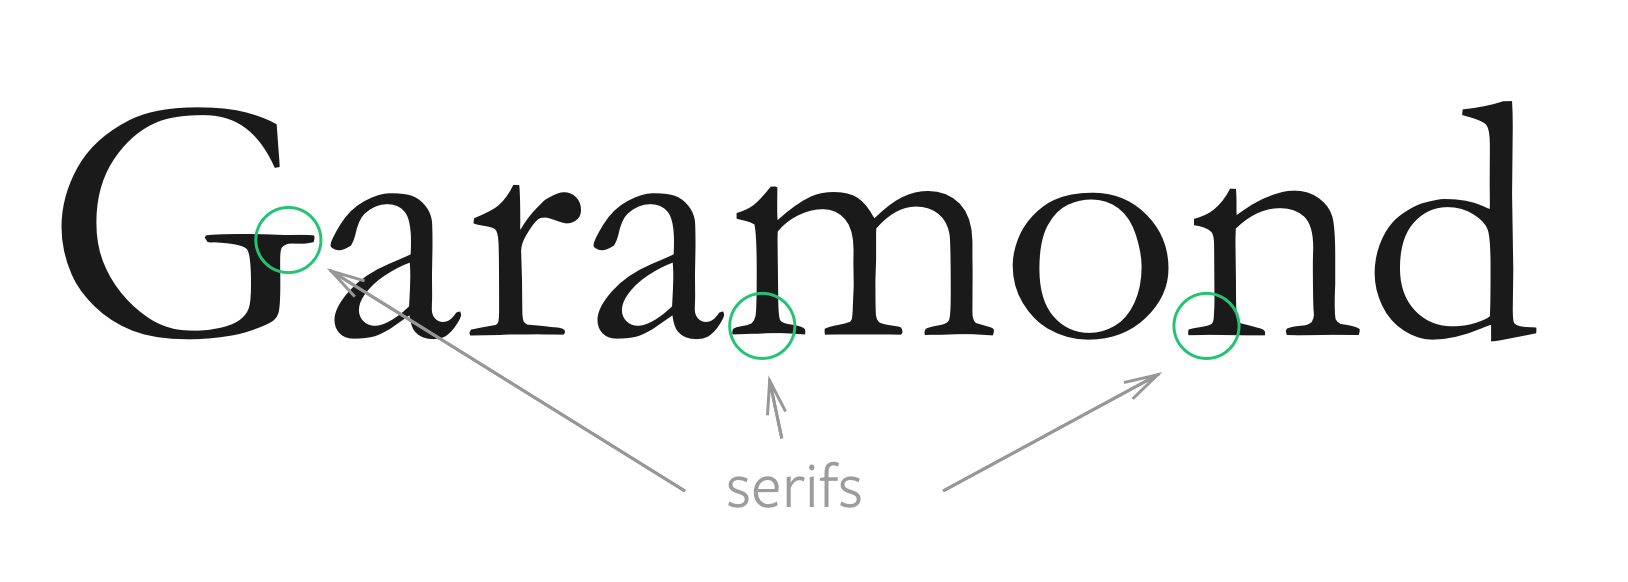 description of garamond typeface